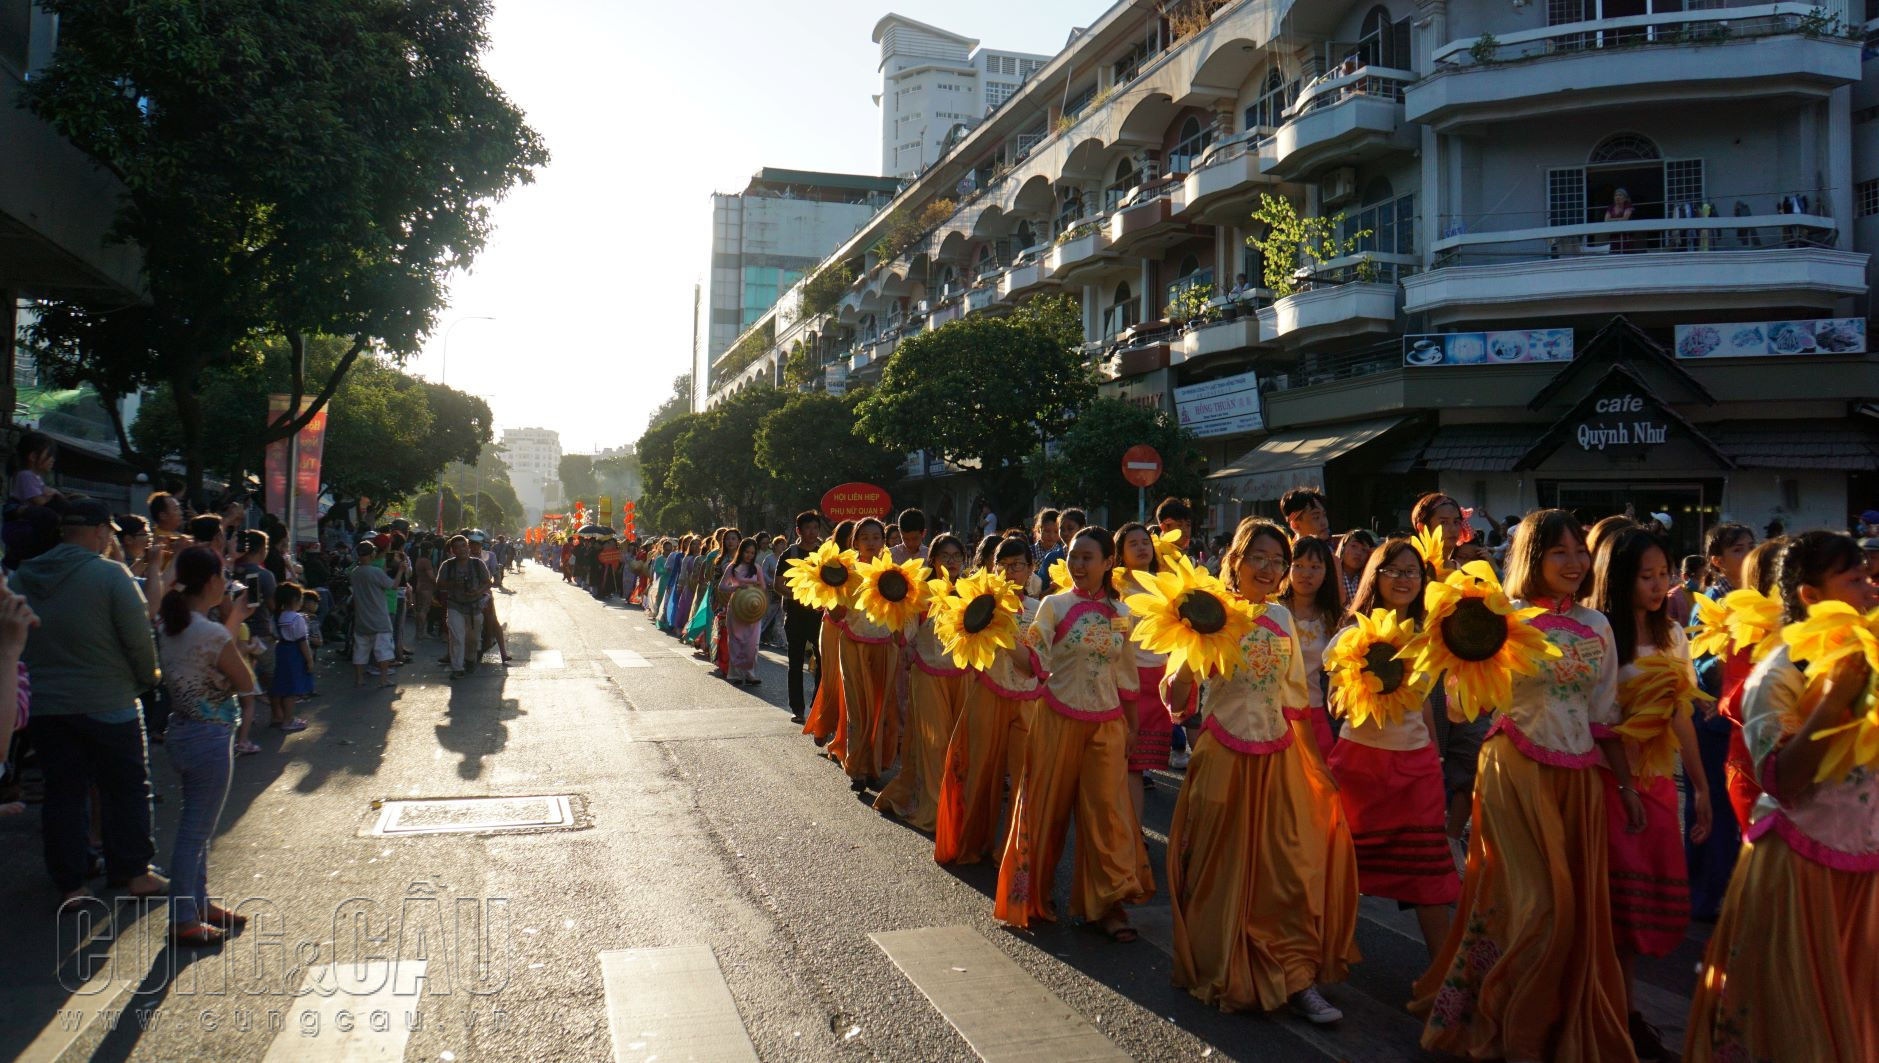 Màn diễu hành hoành tráng này từ lâu đã trở thành một đẹp văn hoá thú vị, thu hút hàng nghìn người dân Sài Gòn quan tâm.